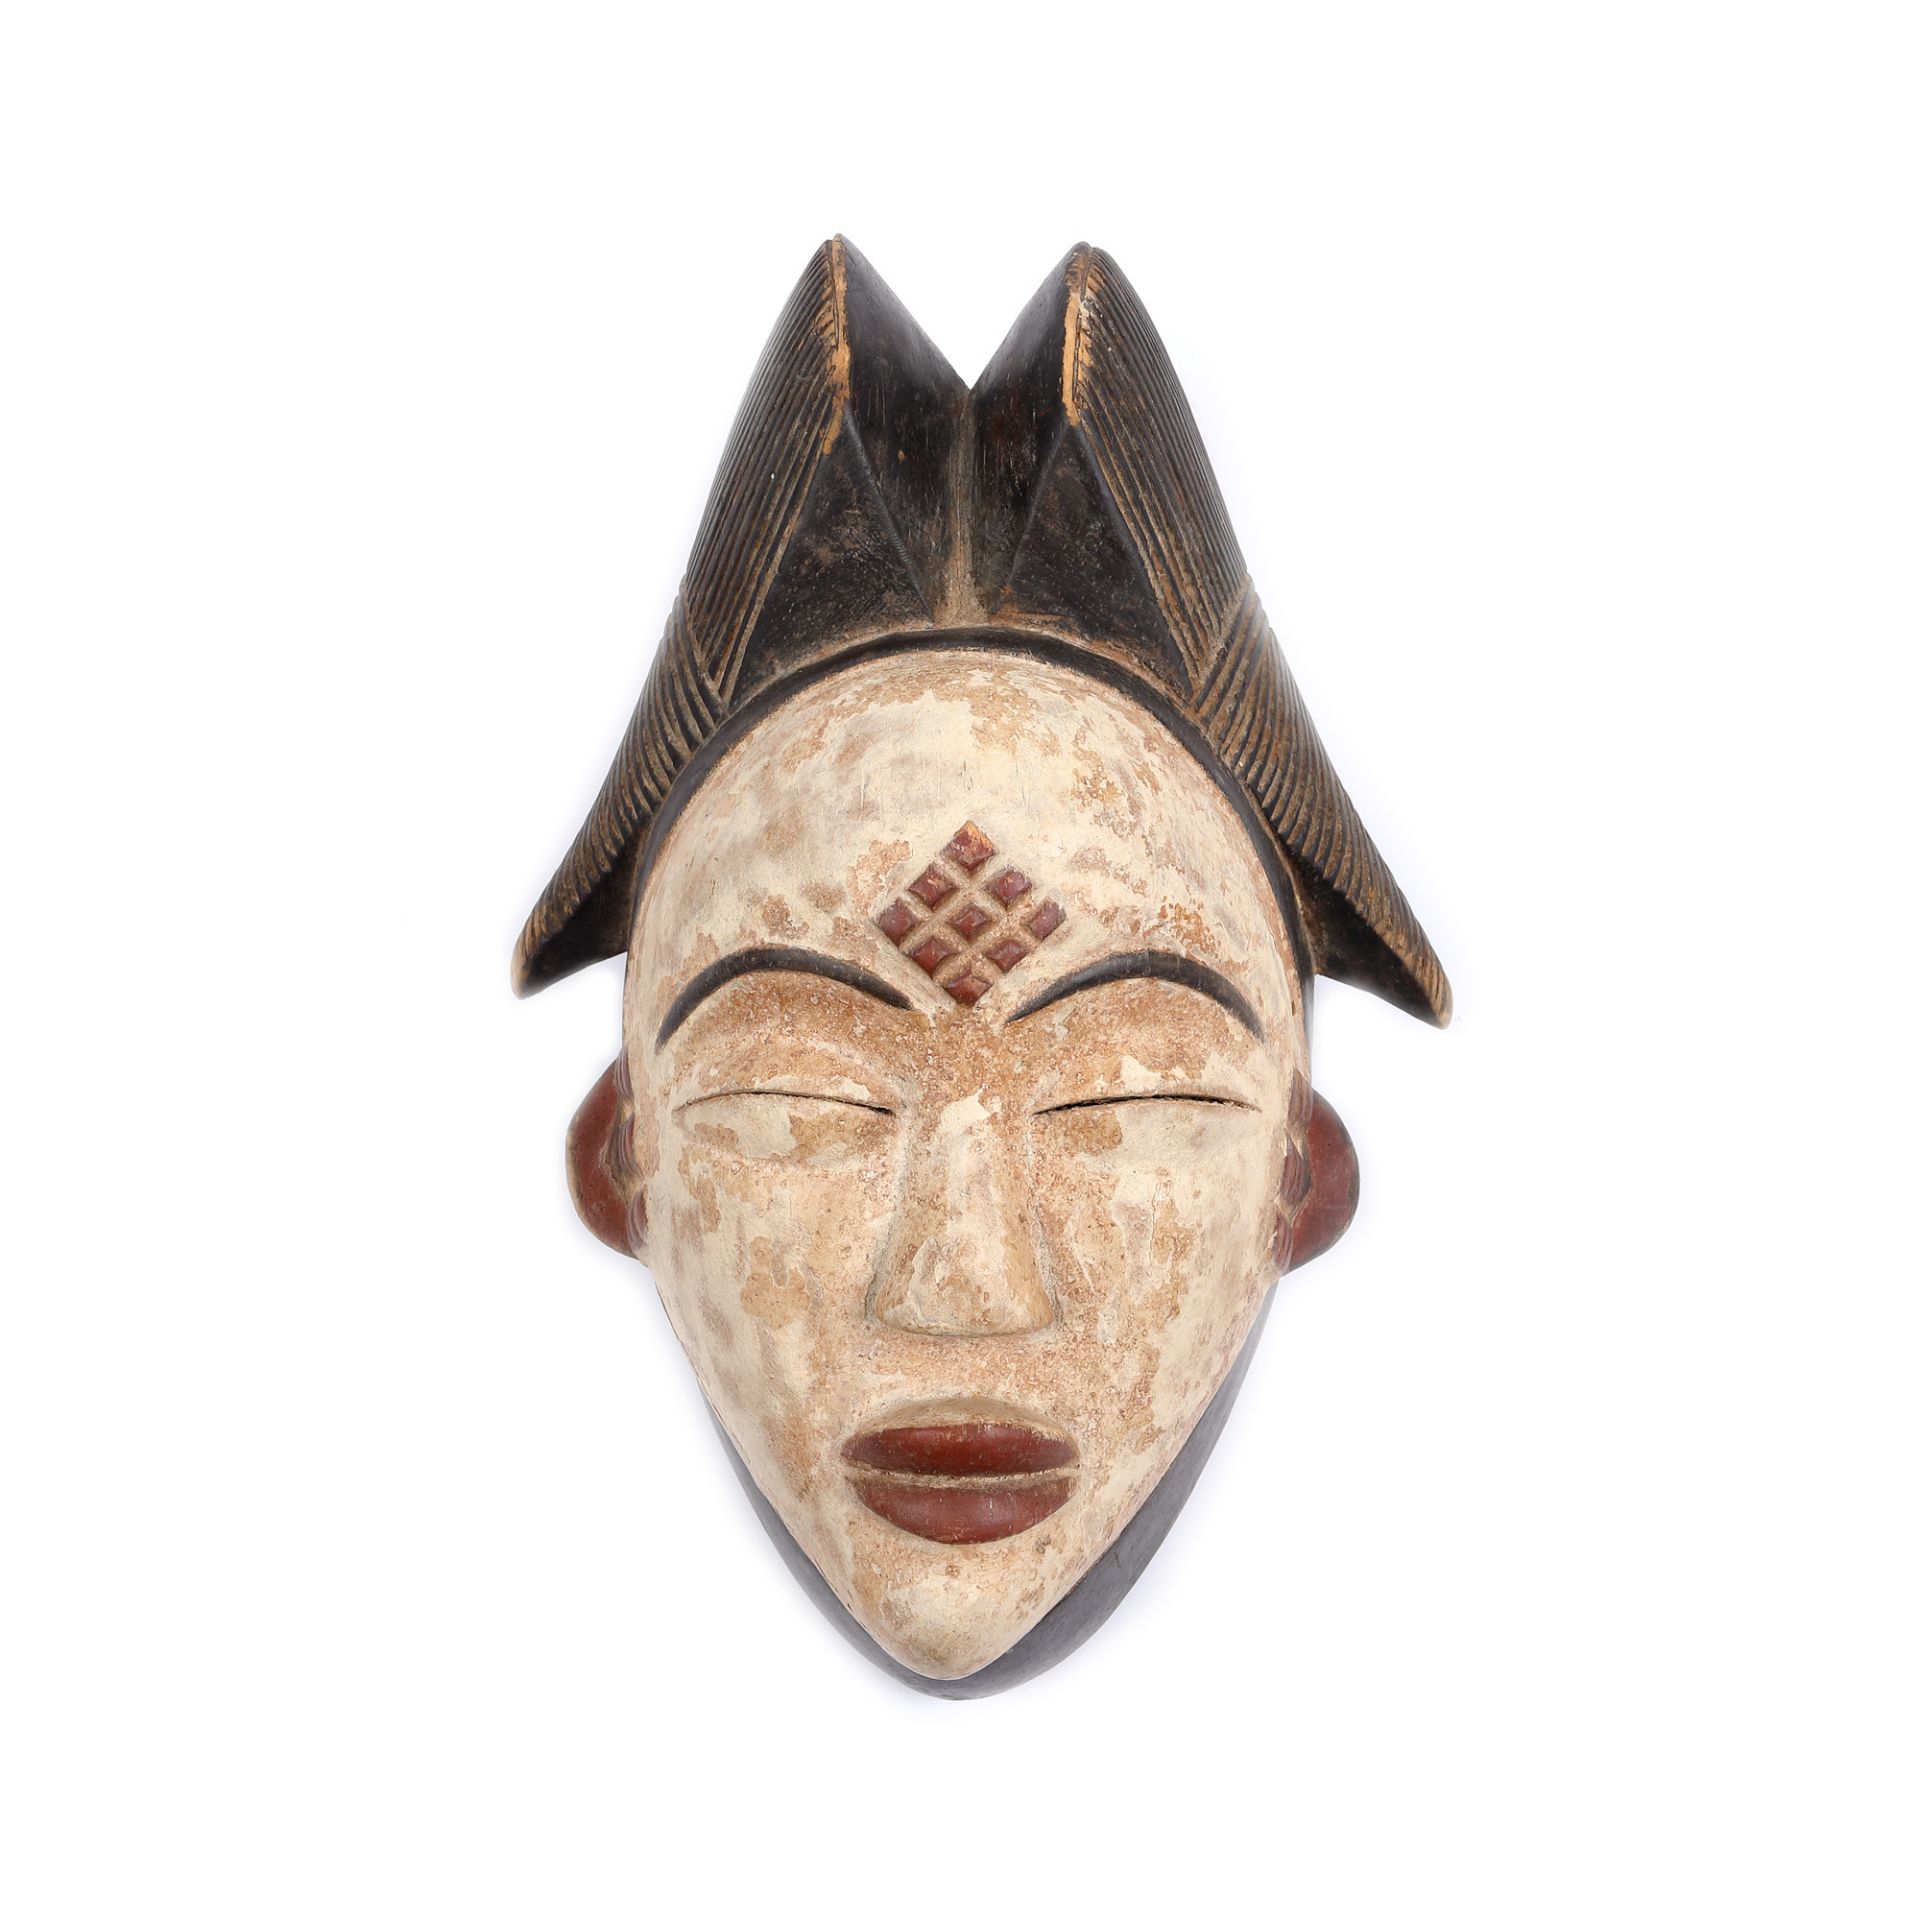 West African workshop, Punu mask, Gabon